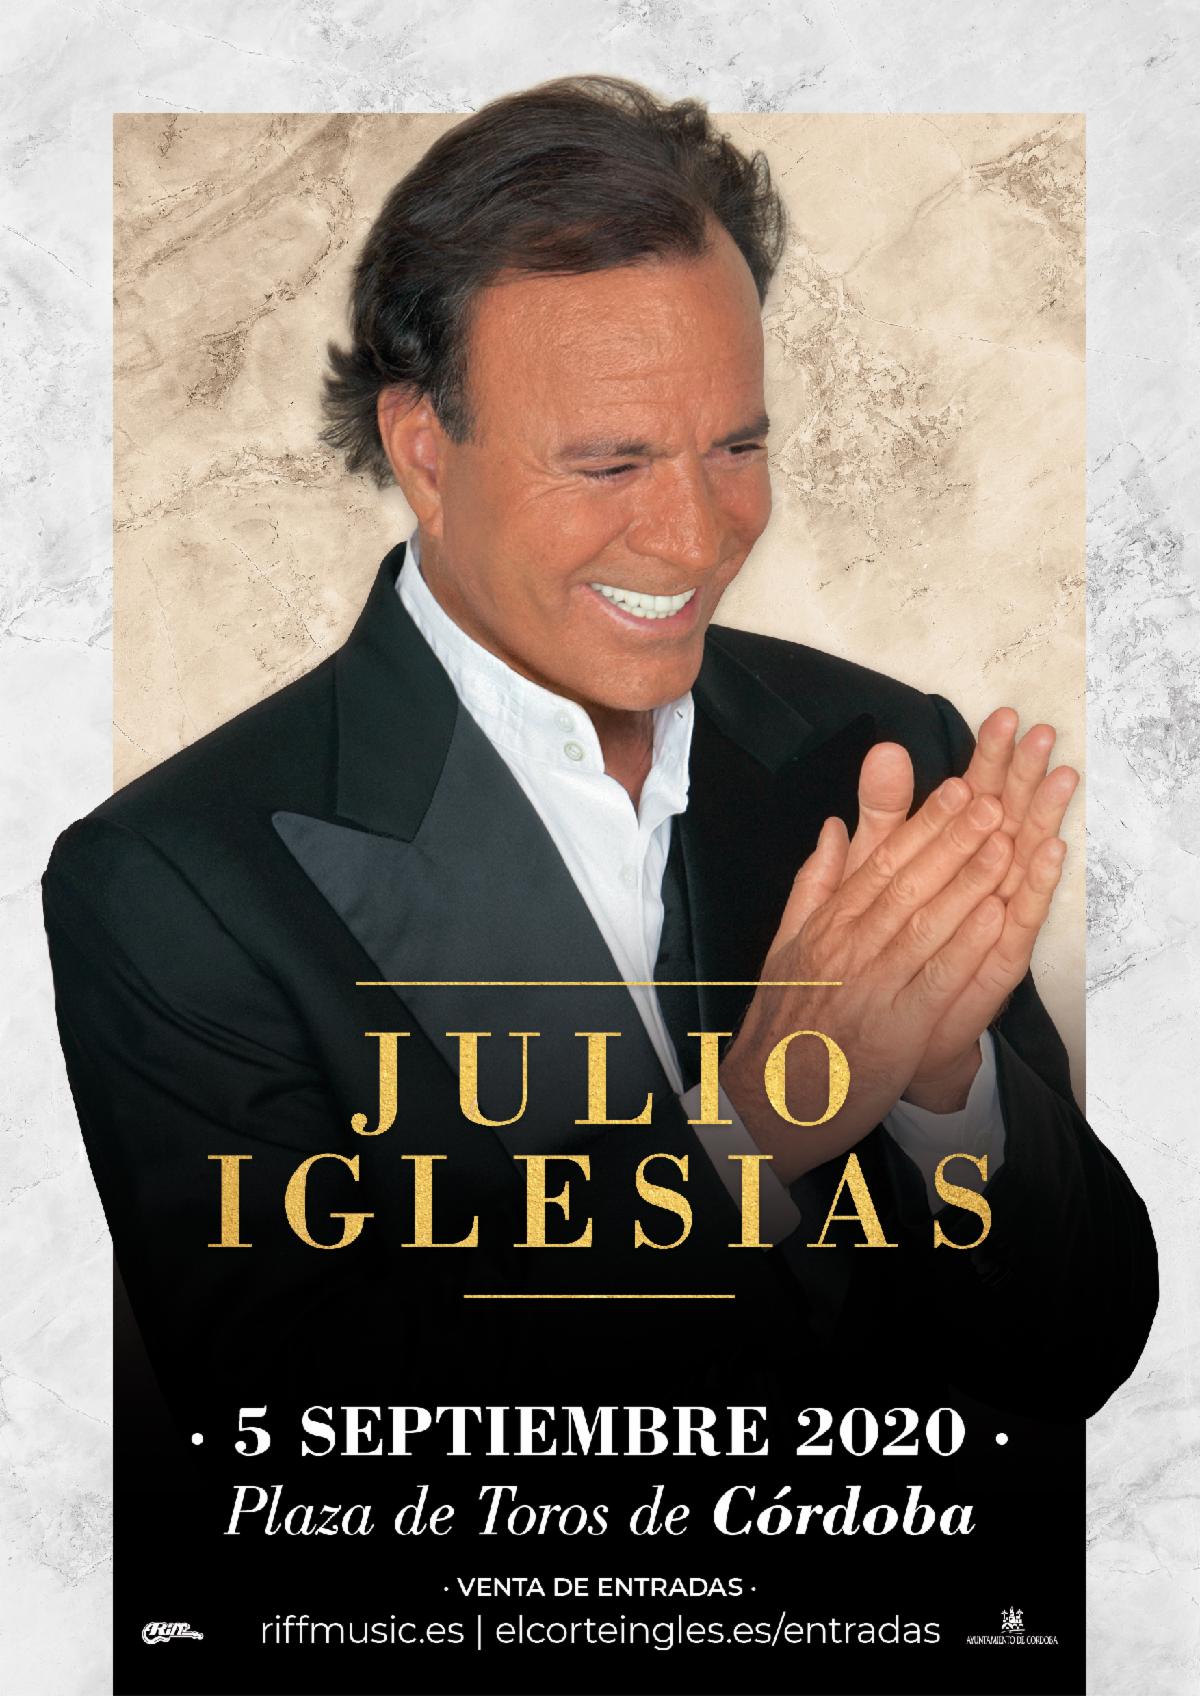 Julio Iglesias anuncia concierto en Córdoba para septiembre